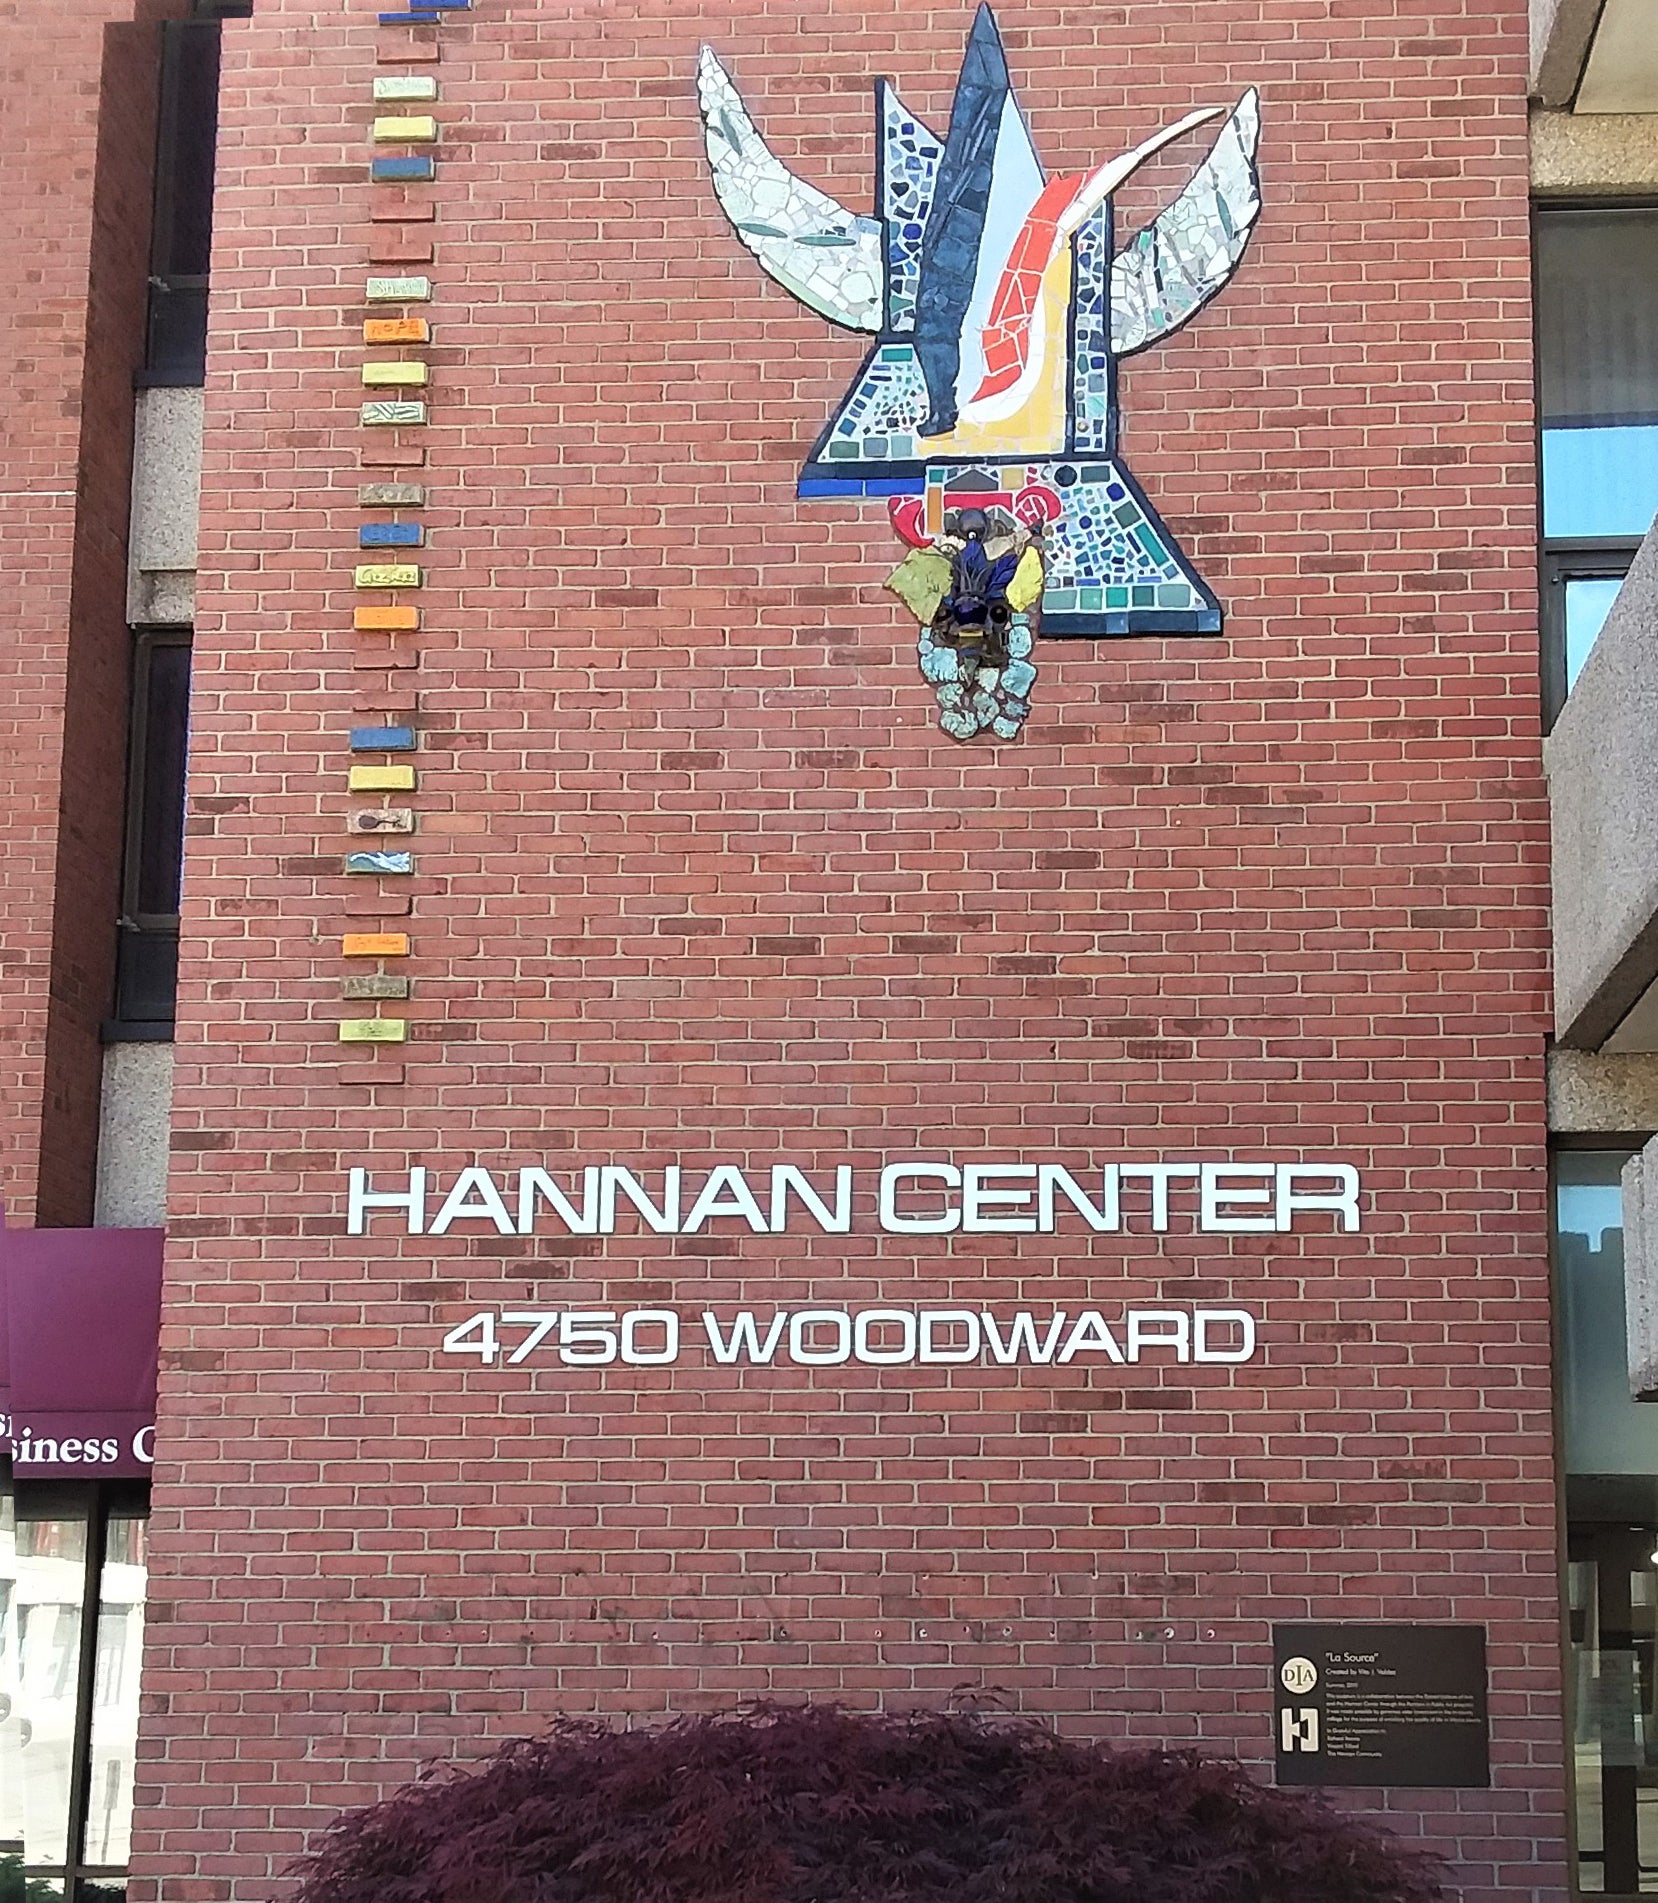 Hannan Center Public Art project